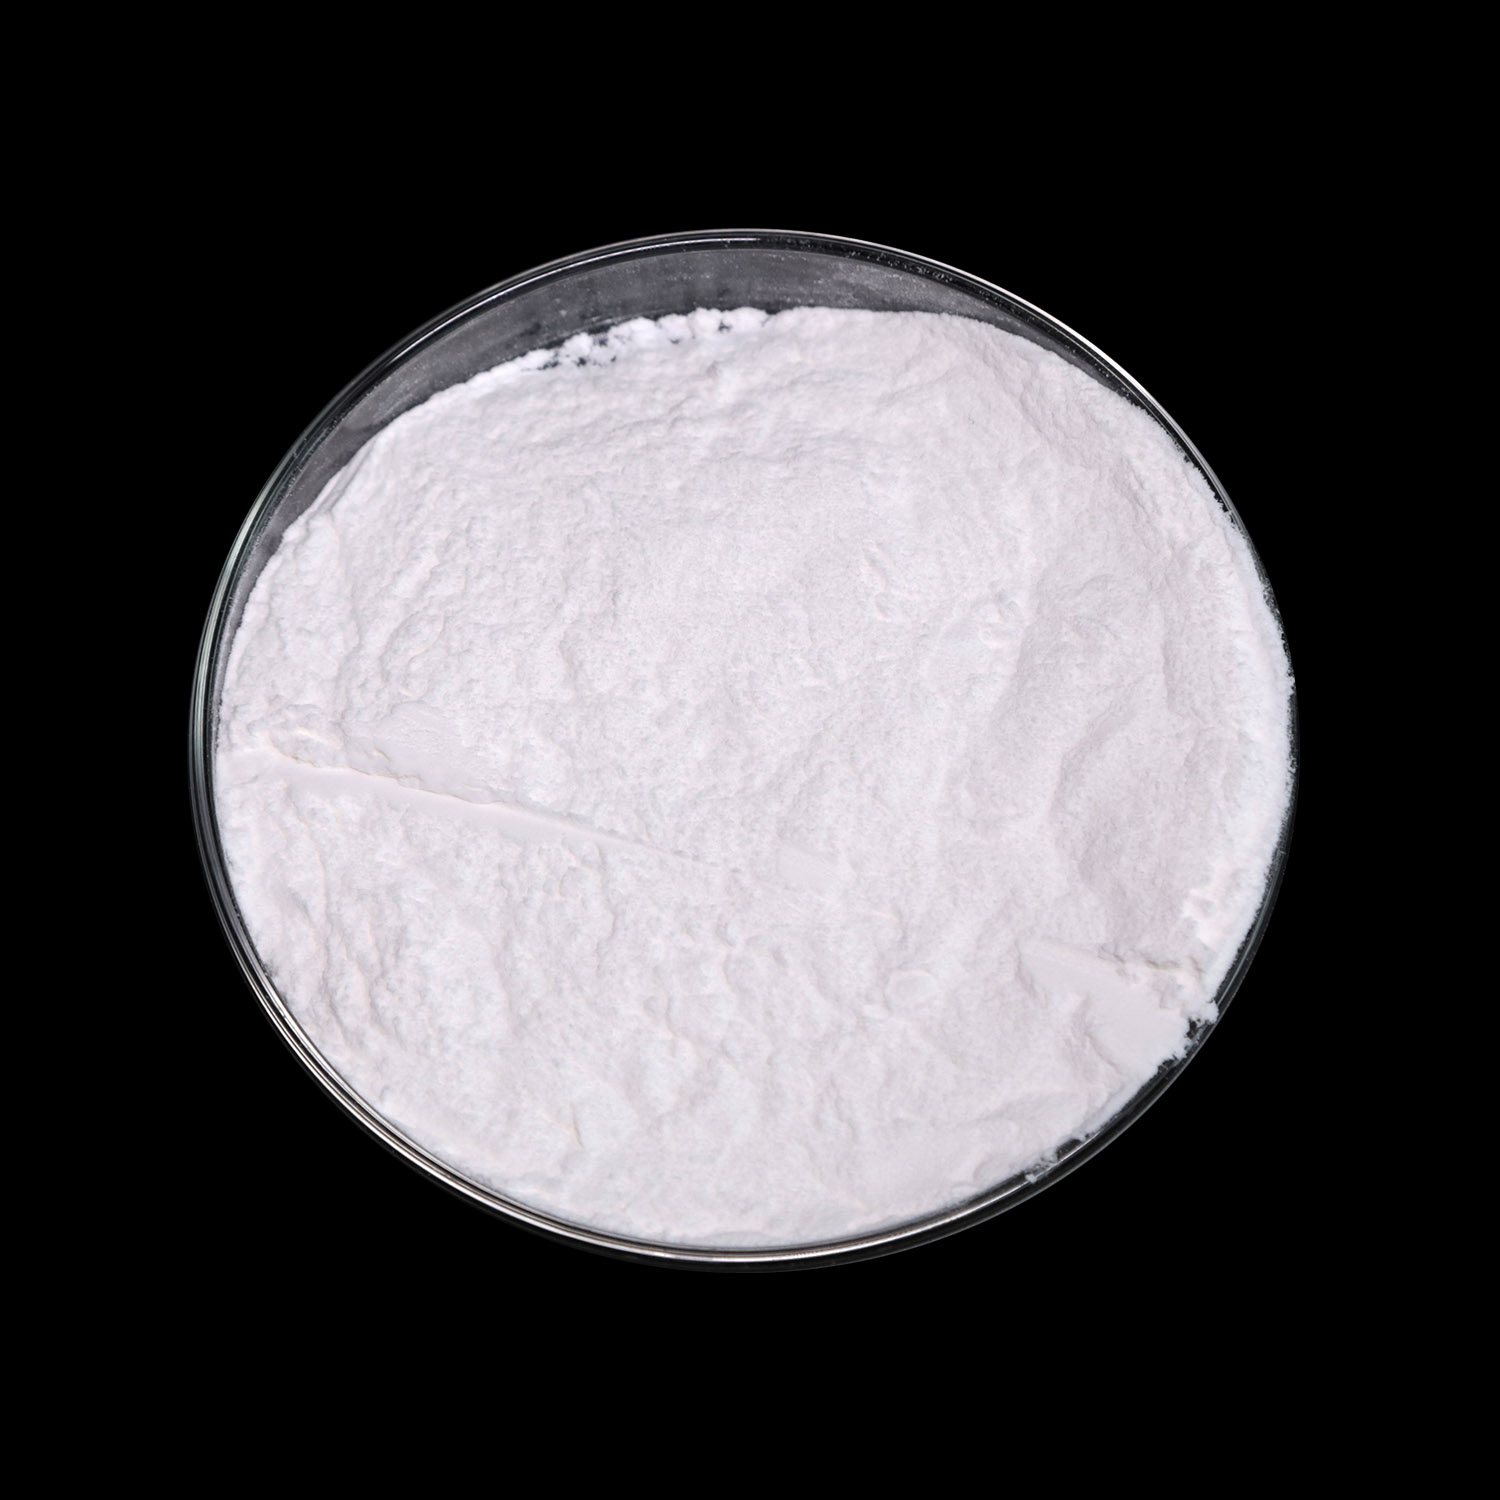 Bordeuterid sodný 99% čistota CAS 15681-89-7 Výrobní cena Vysoká kvalita